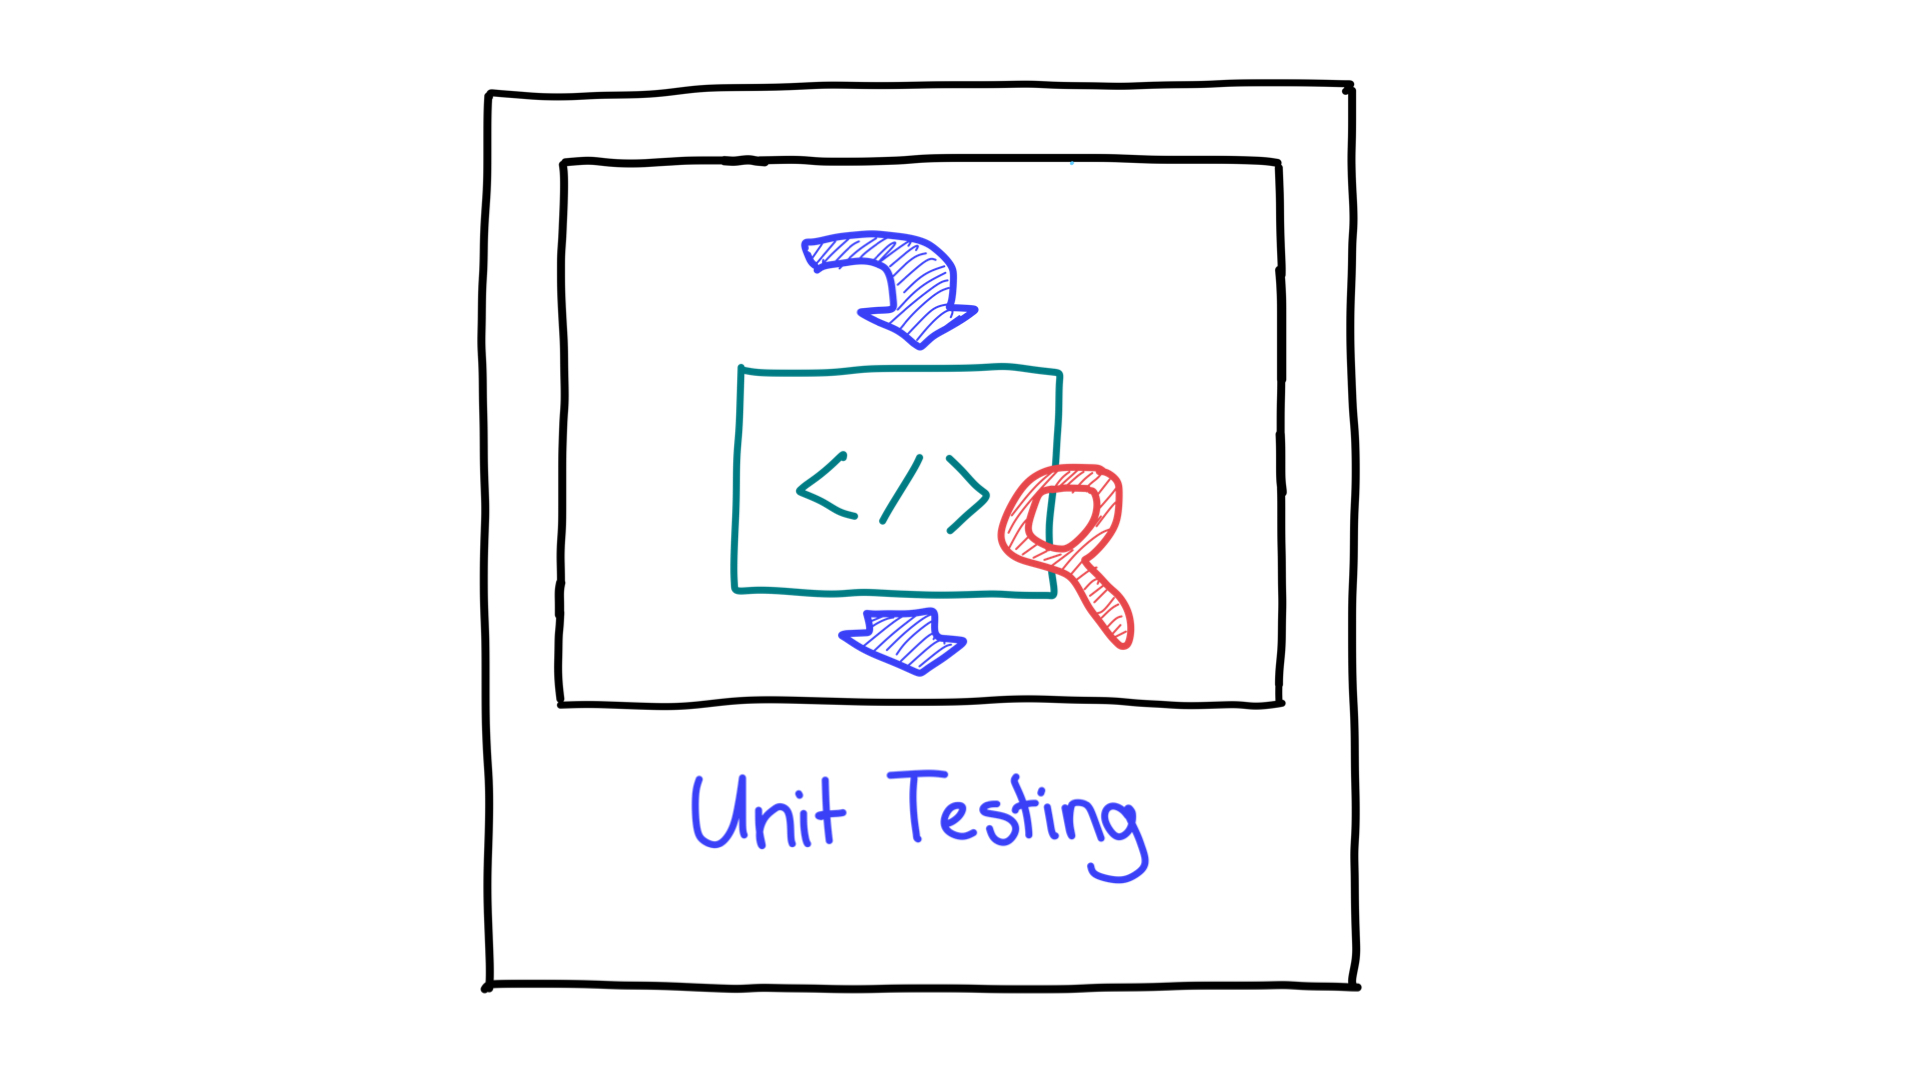 Representação simplificada de testes de unidade mostrando a entrada e a saída.